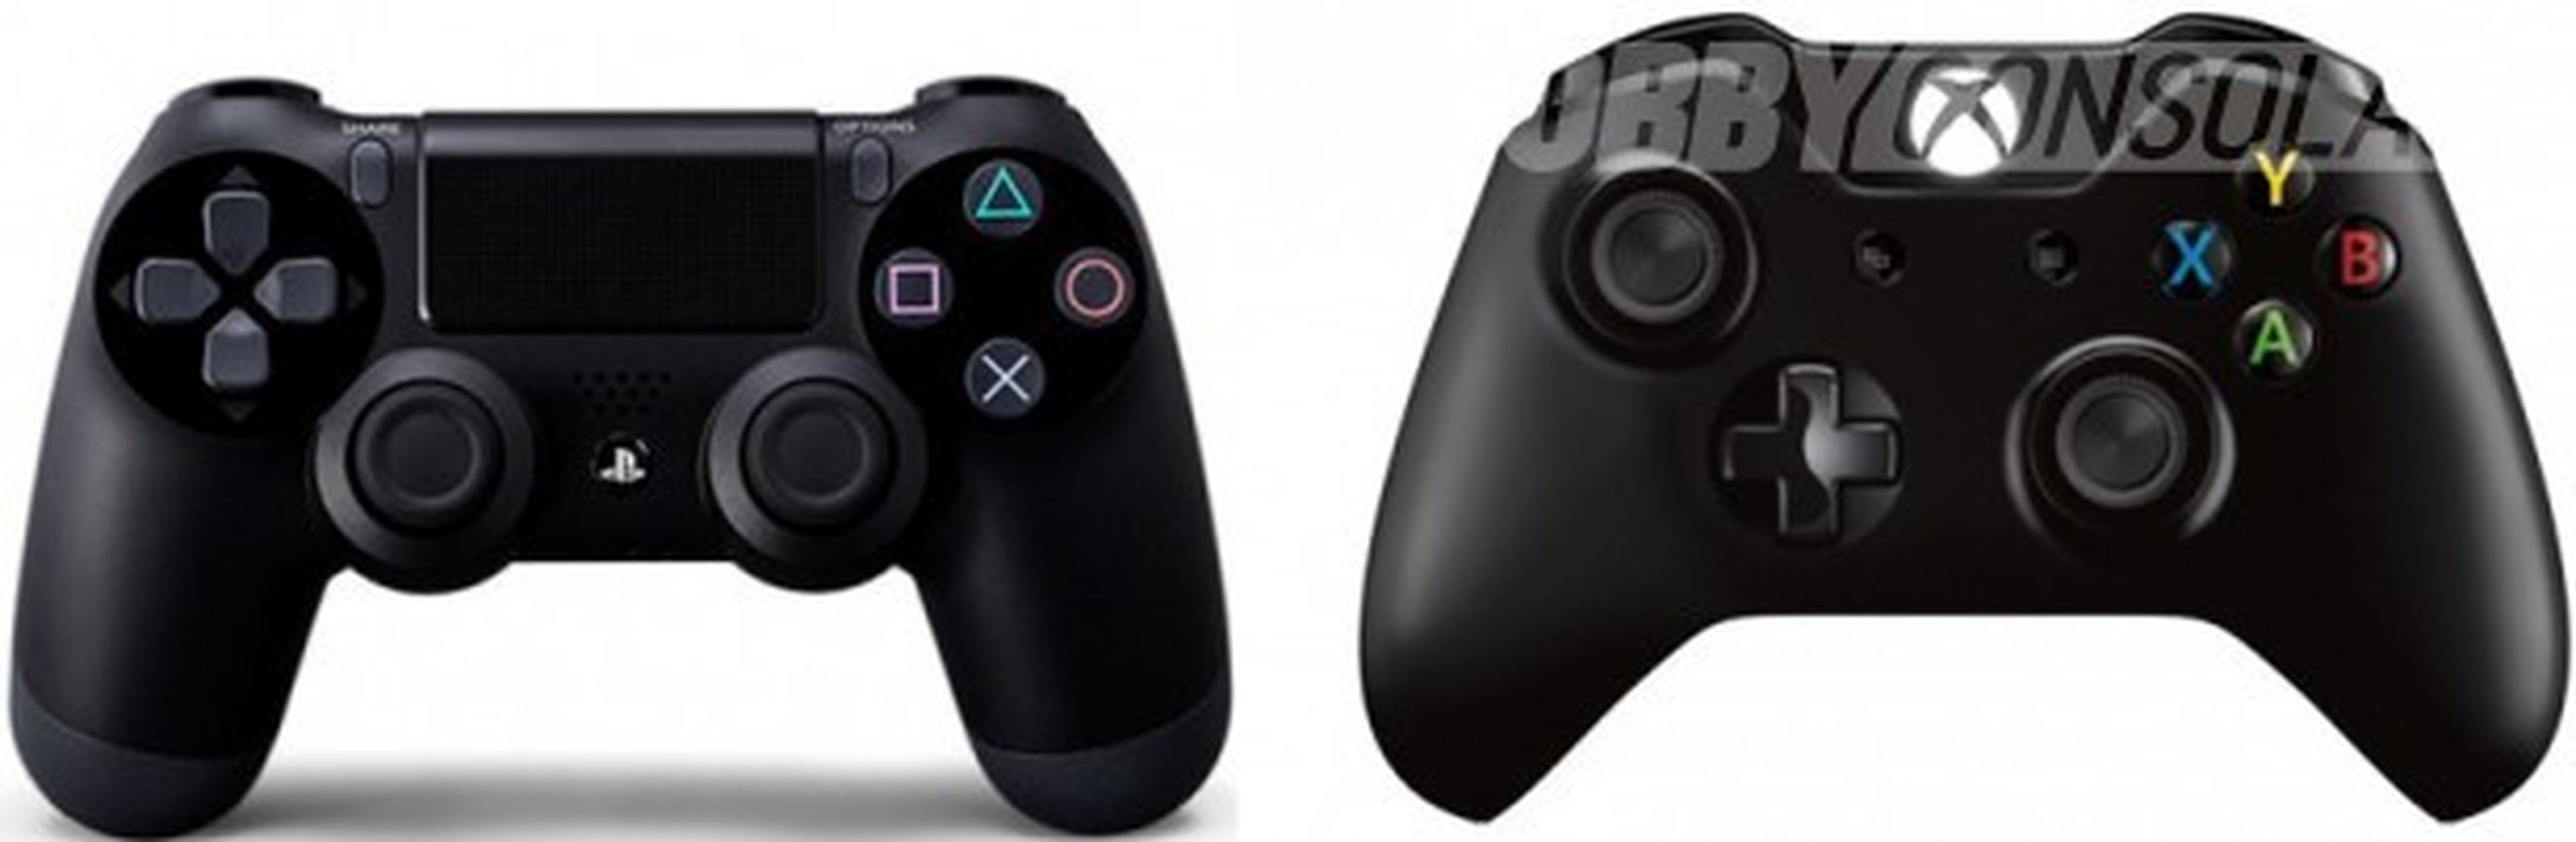 Microsoft responde al tema de la potencia de Xbox One y PS4